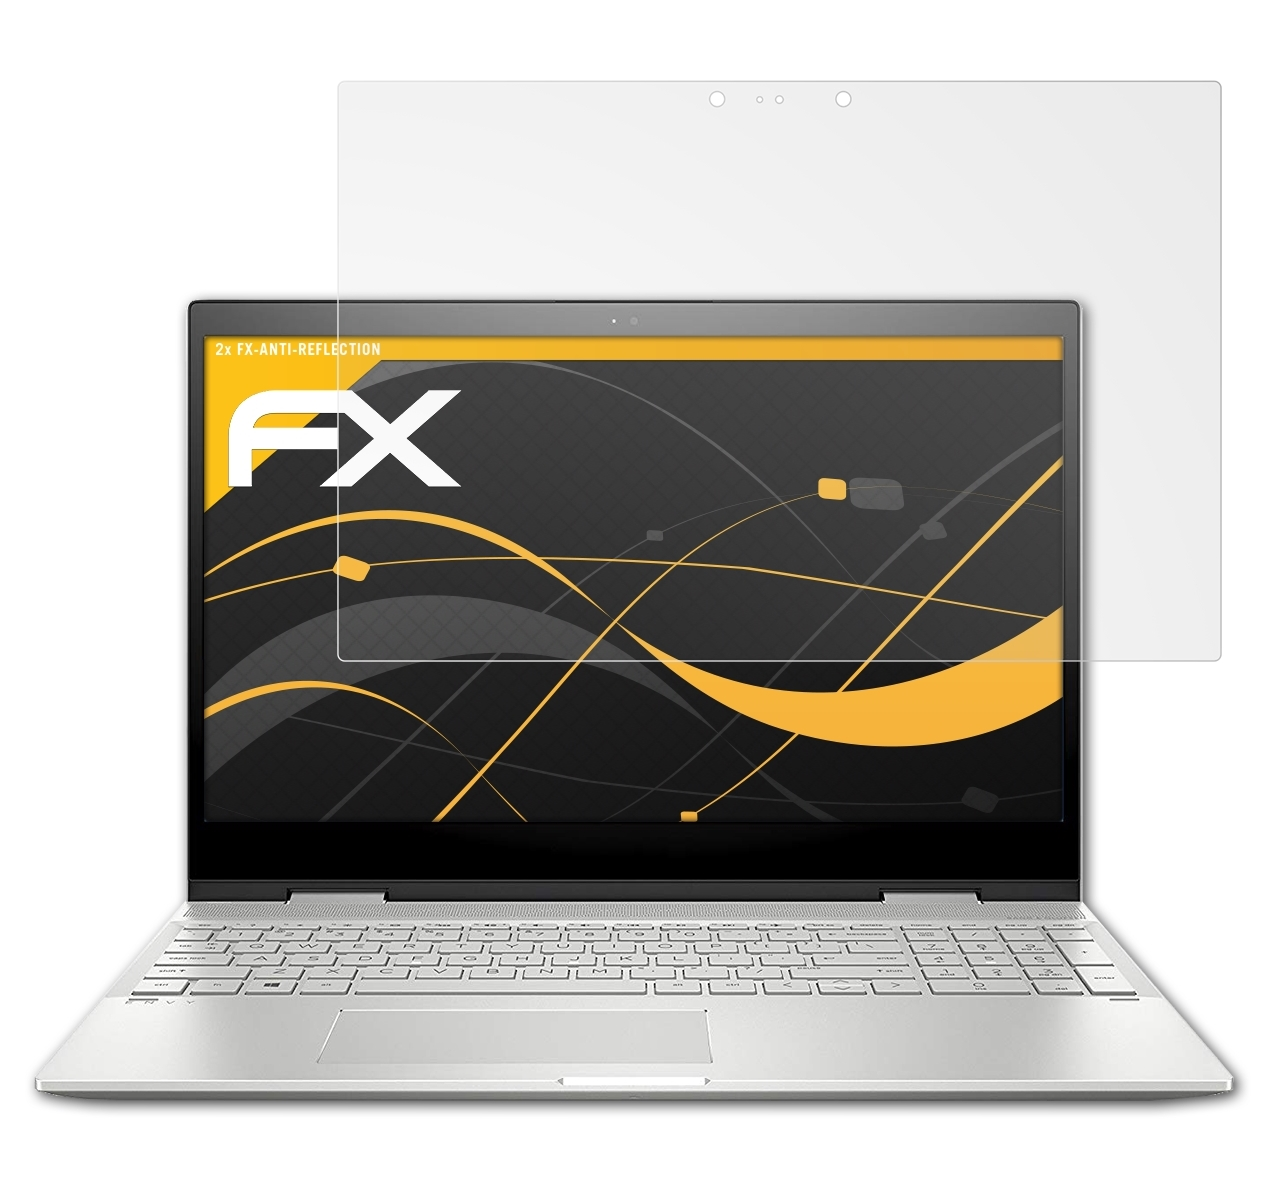 2x HP FX-Antireflex Displayschutz(für 15-cn1004ng) ATFOLIX Envy x360